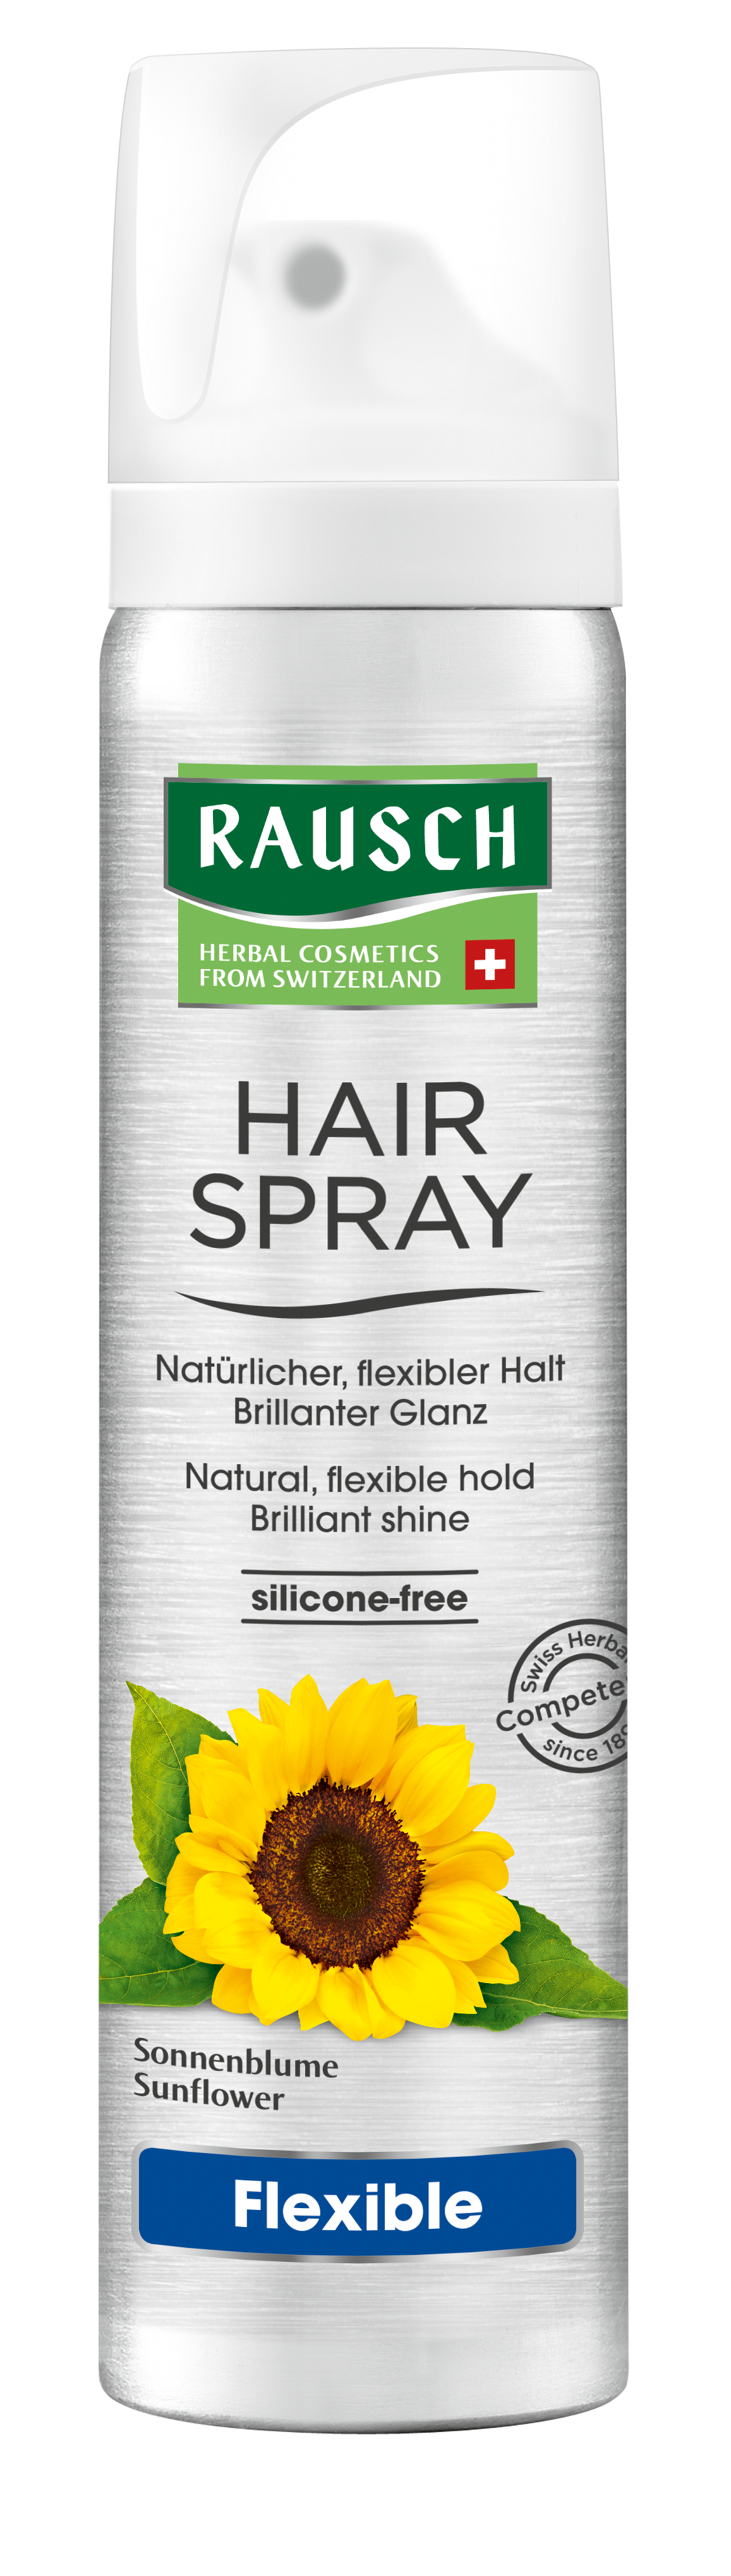 RAUSCH Flexible  Aerosol Hairspray 